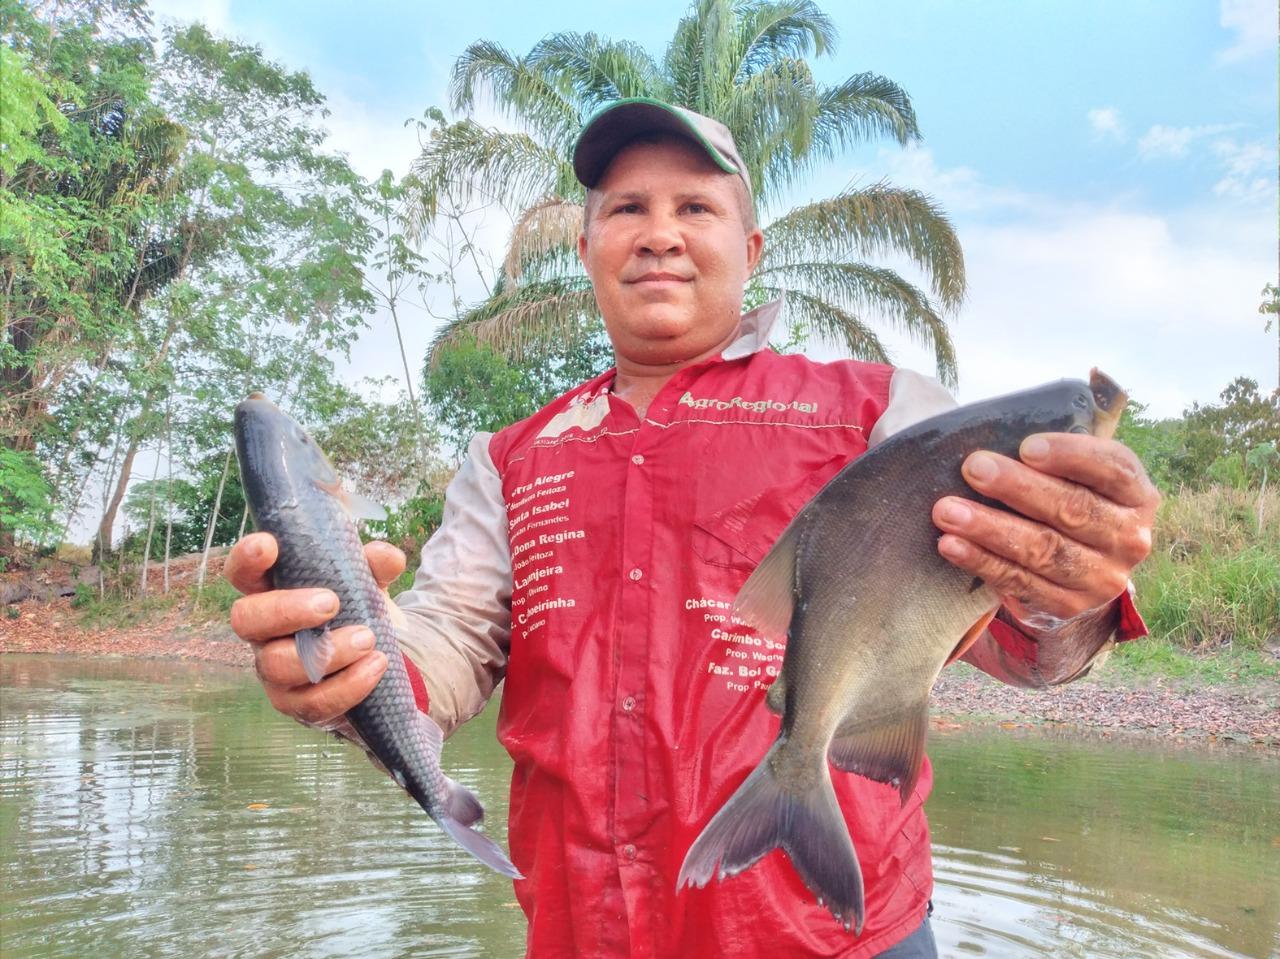 Morador de assentamento rural em Guaraí decide transformar cacimbas em criatório para peixes